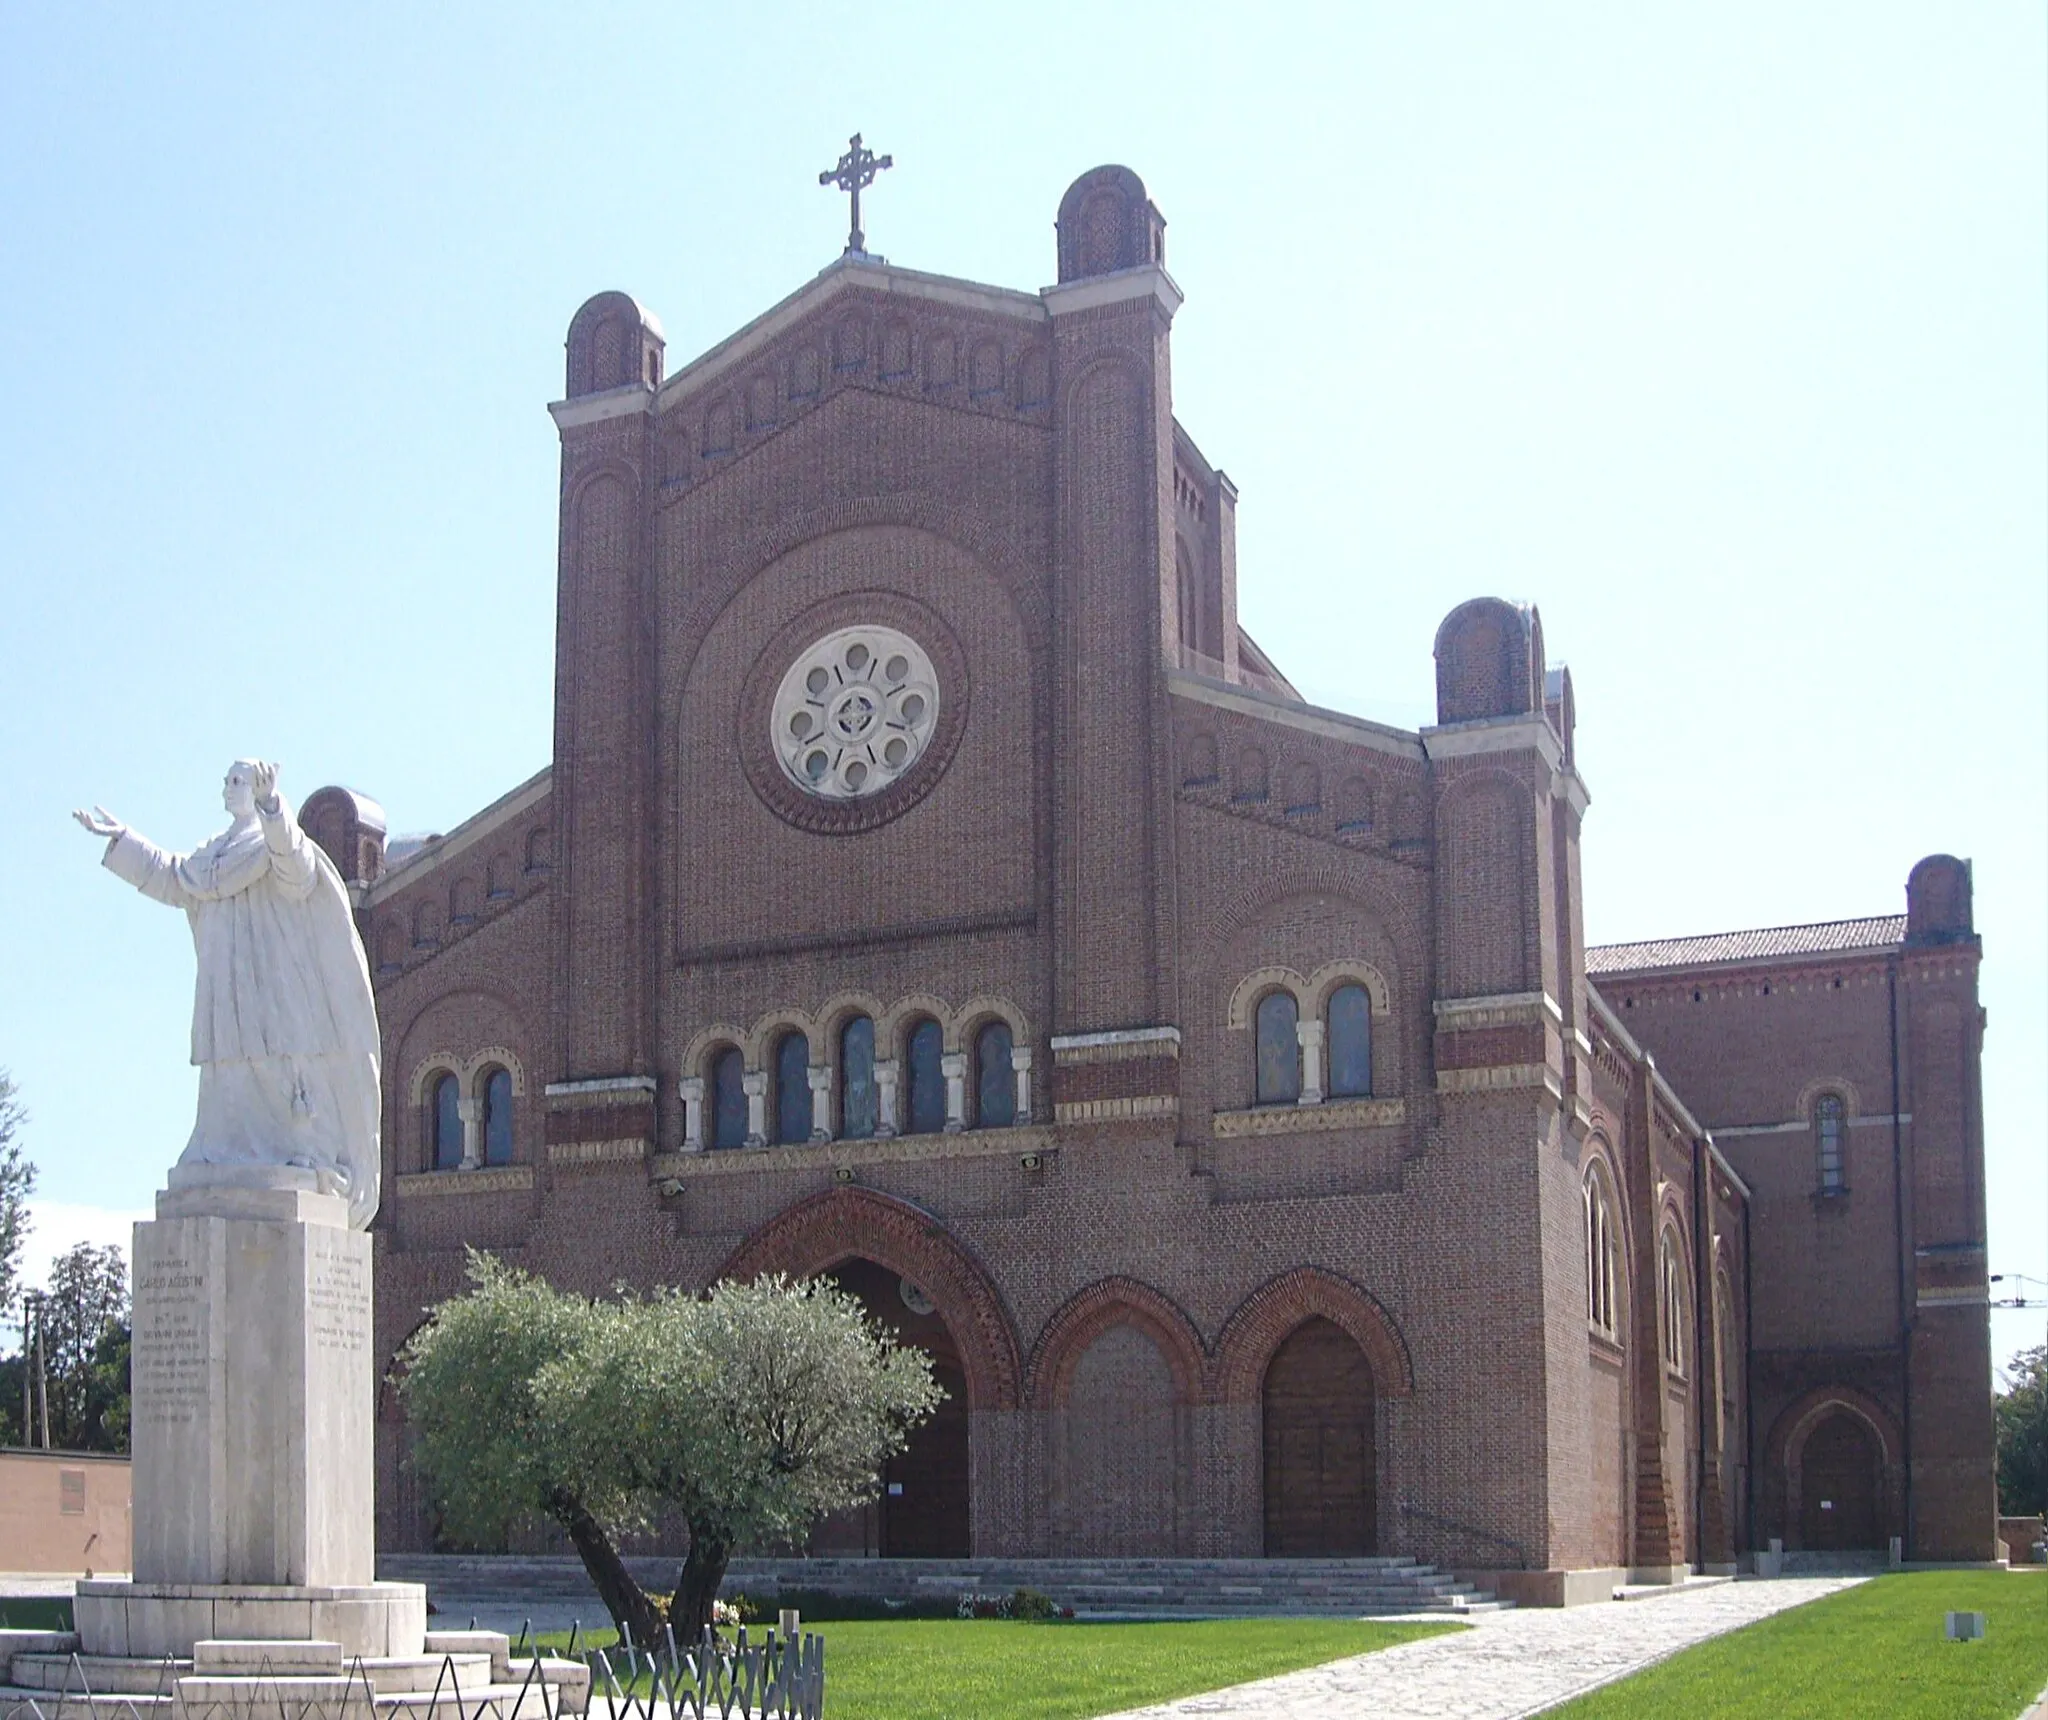 Image of San Martino di Lupari